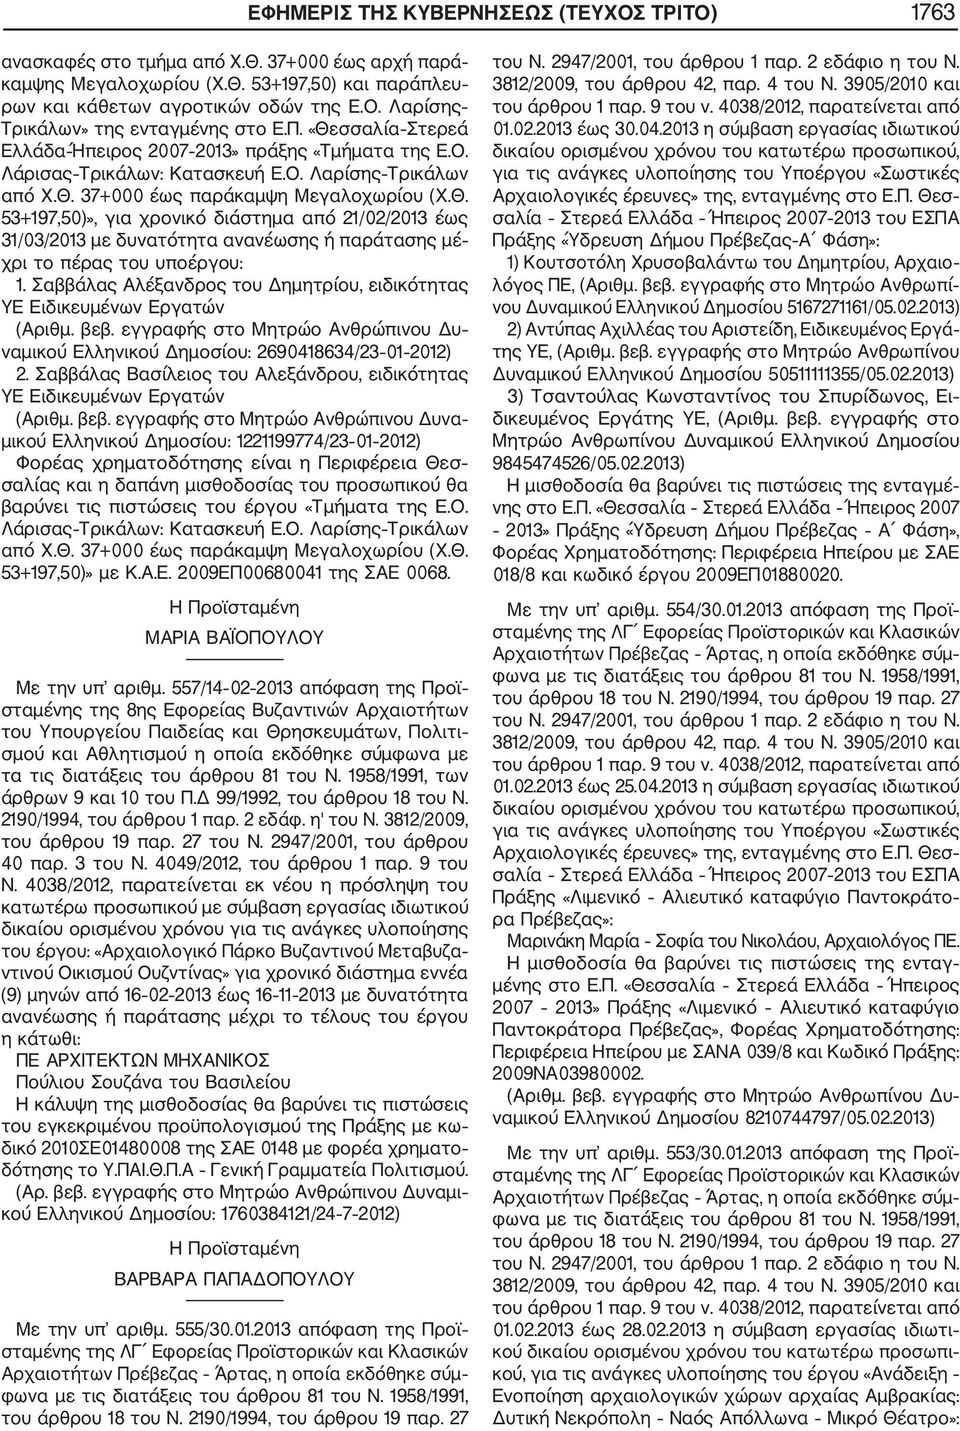 Σαββάλας Αλέξανδρος του Δημητρίου, ειδικότητας ΥΕ Ειδικευμένων Εργατών (Αριθμ. βεβ. εγγραφής στο Μητρώο Ανθρώπινου Δυ ναμικού Ελληνικού Δημοσίου: 2690418634/23 01 2012) 2.